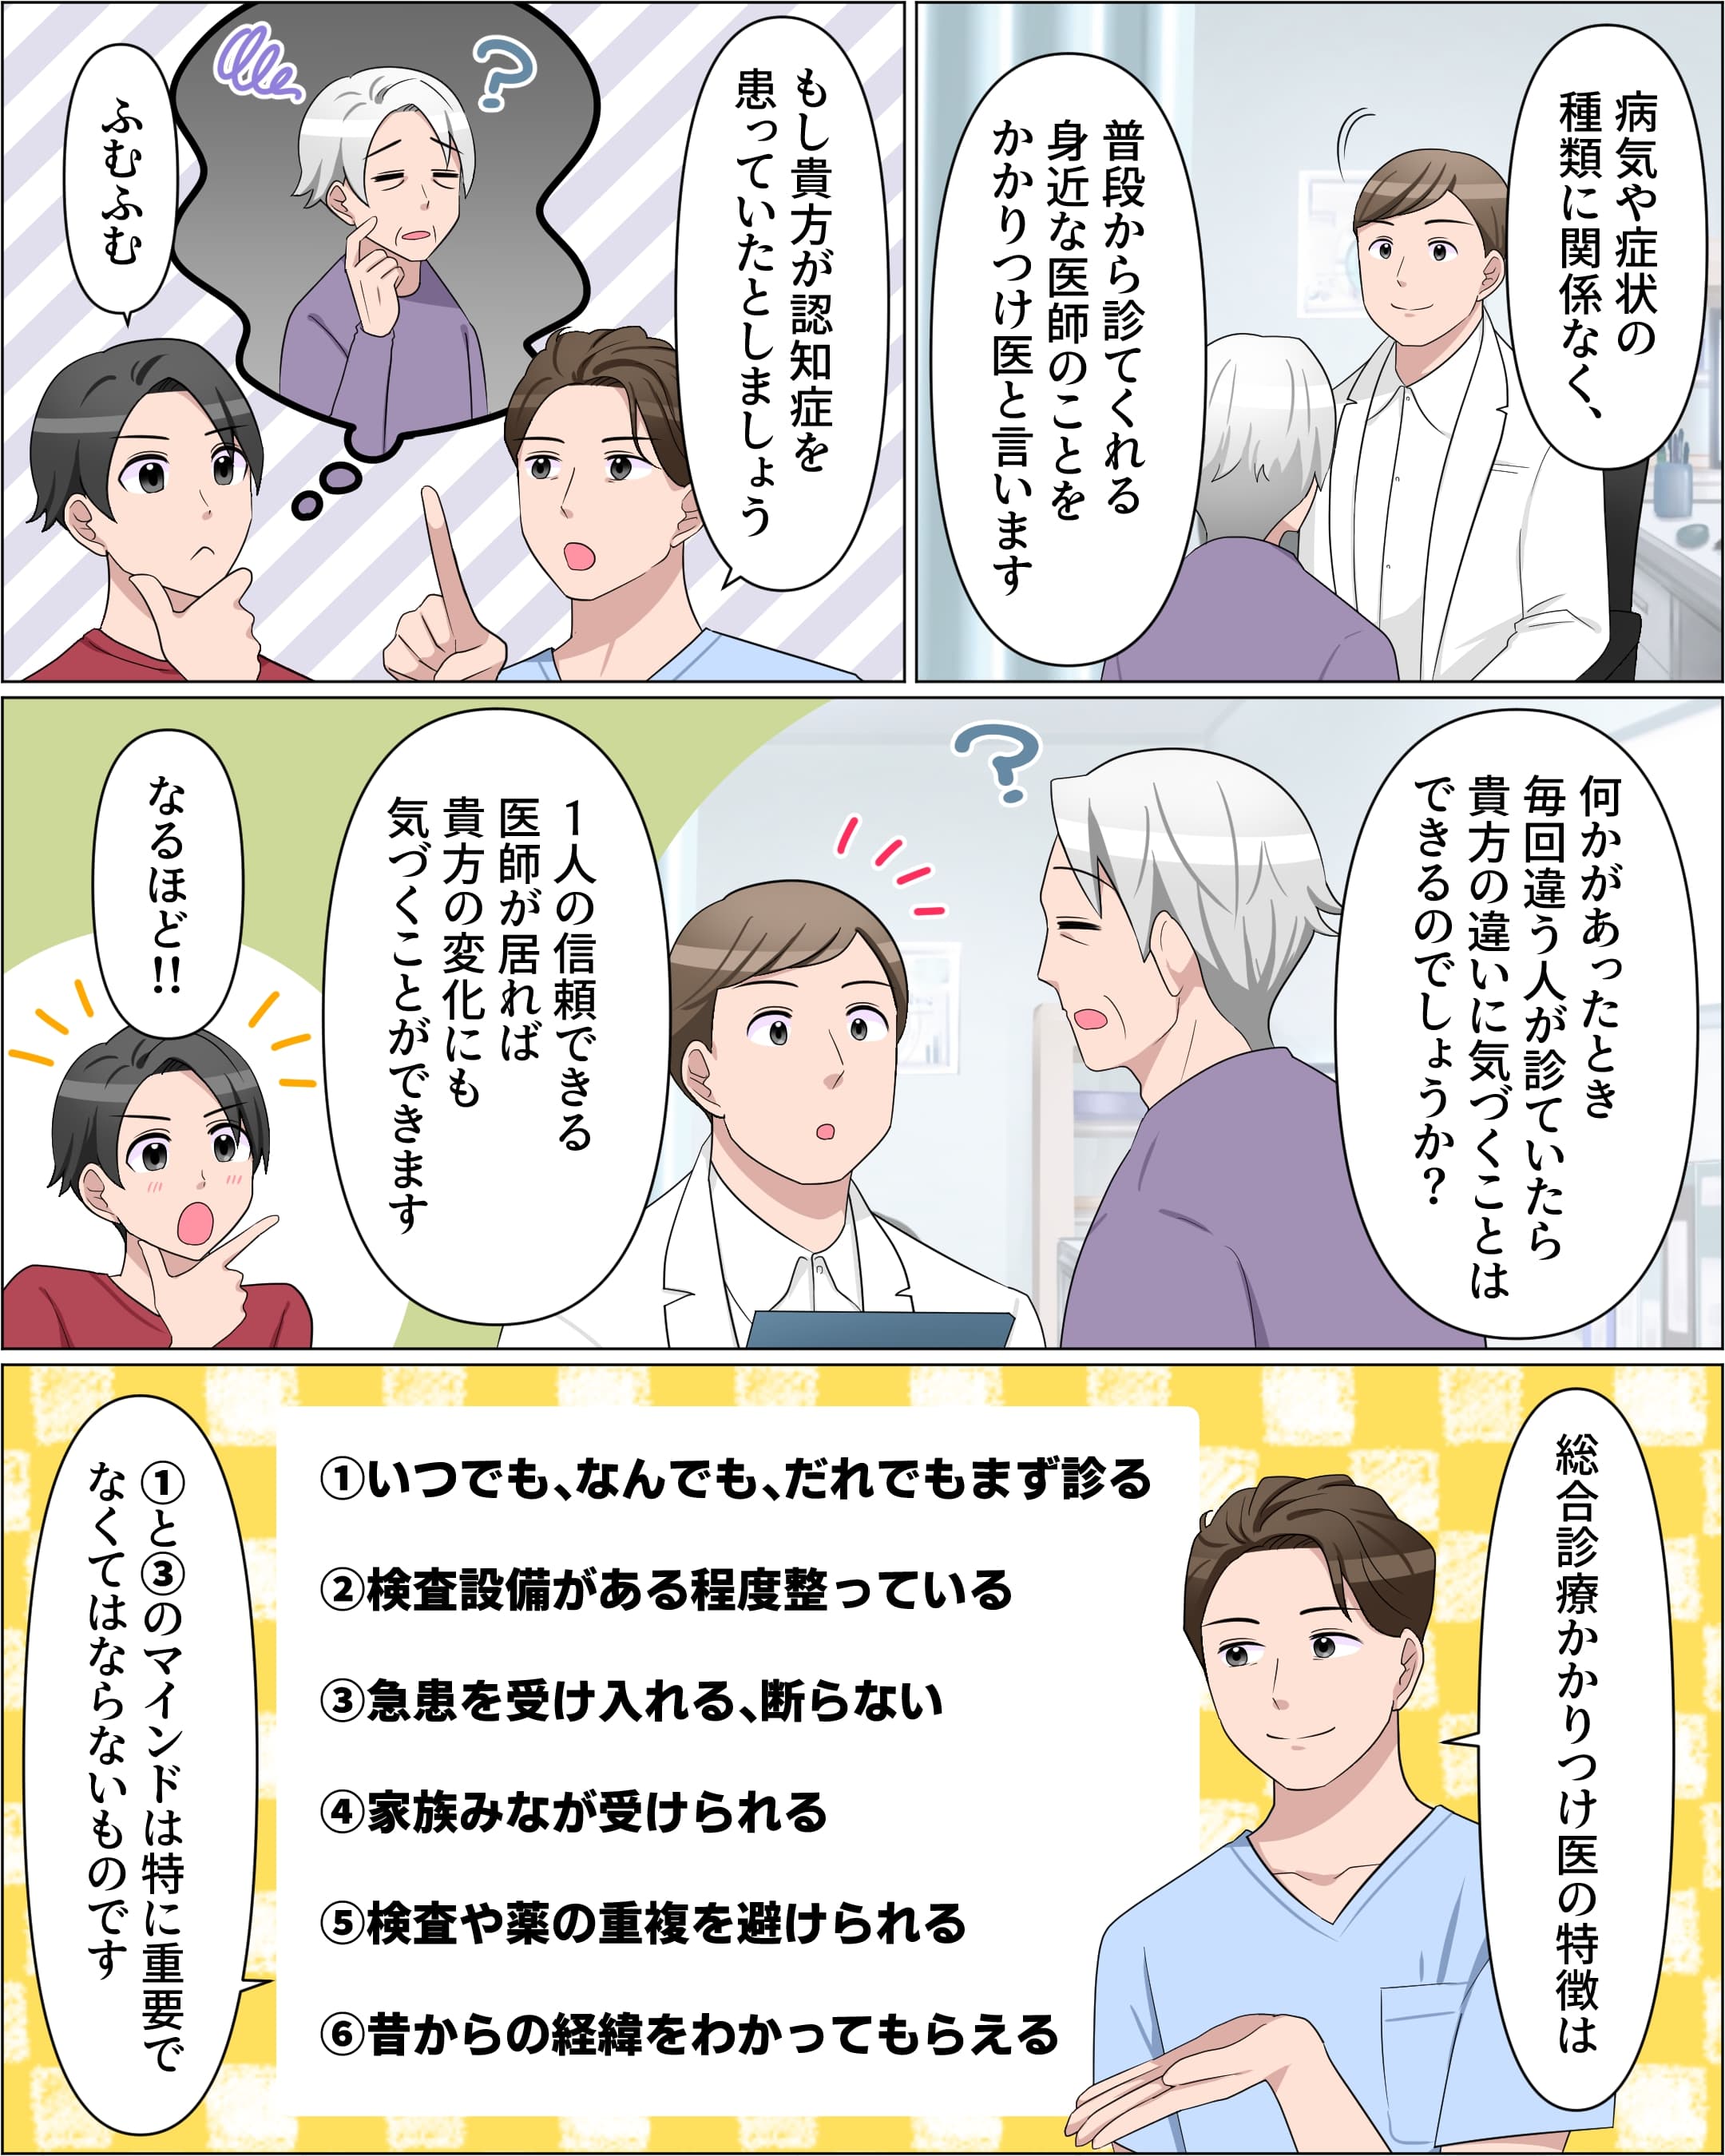 高齢者社会になる日本-6